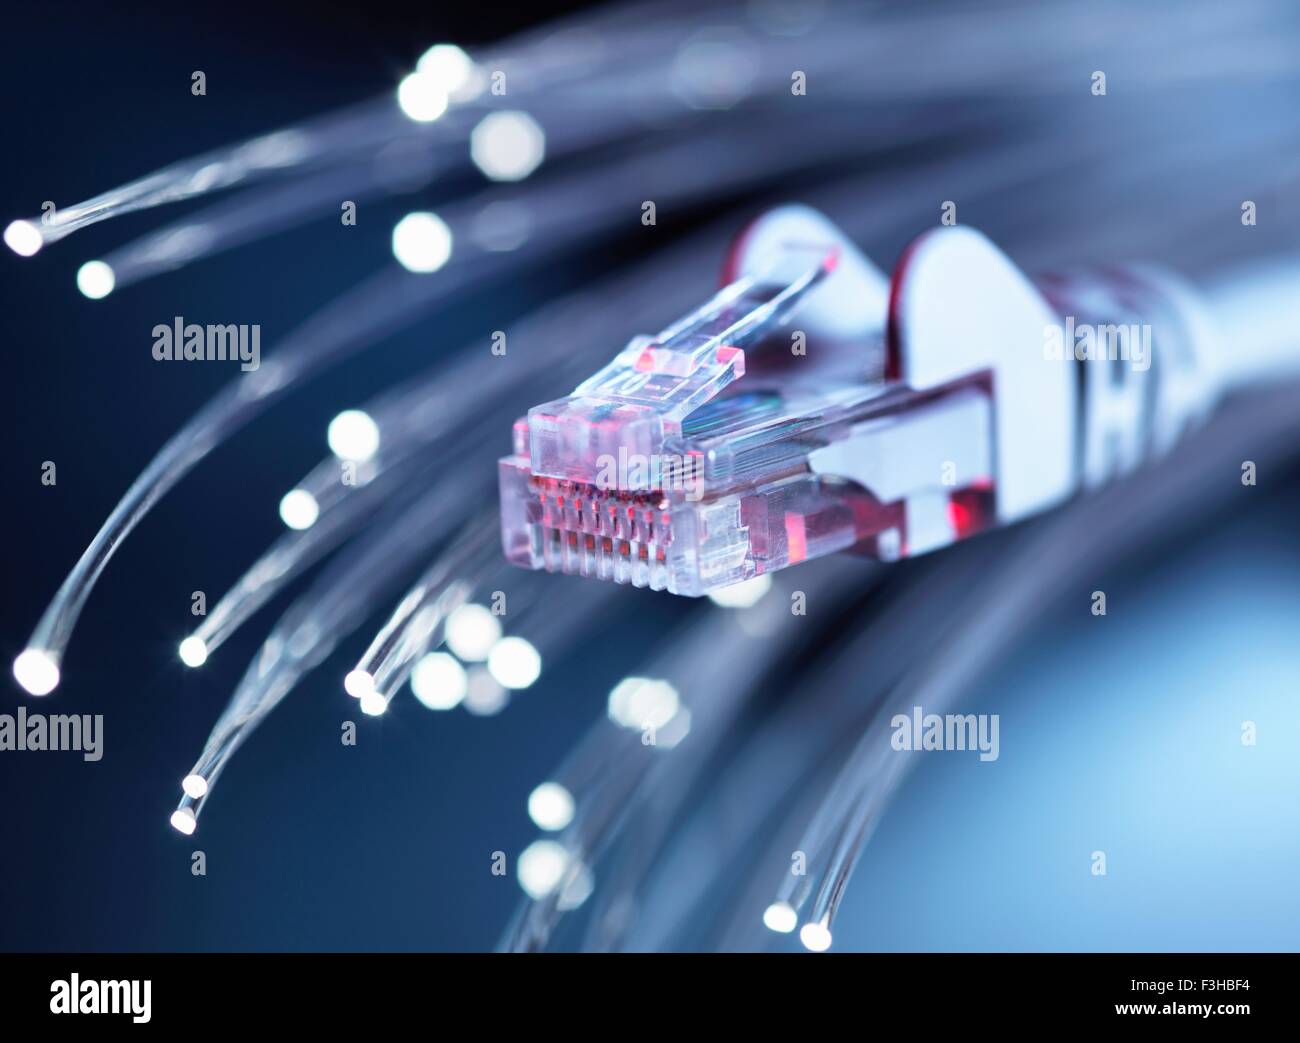 Conector de red de Internet con fibra óptica, close-up Foto de stock